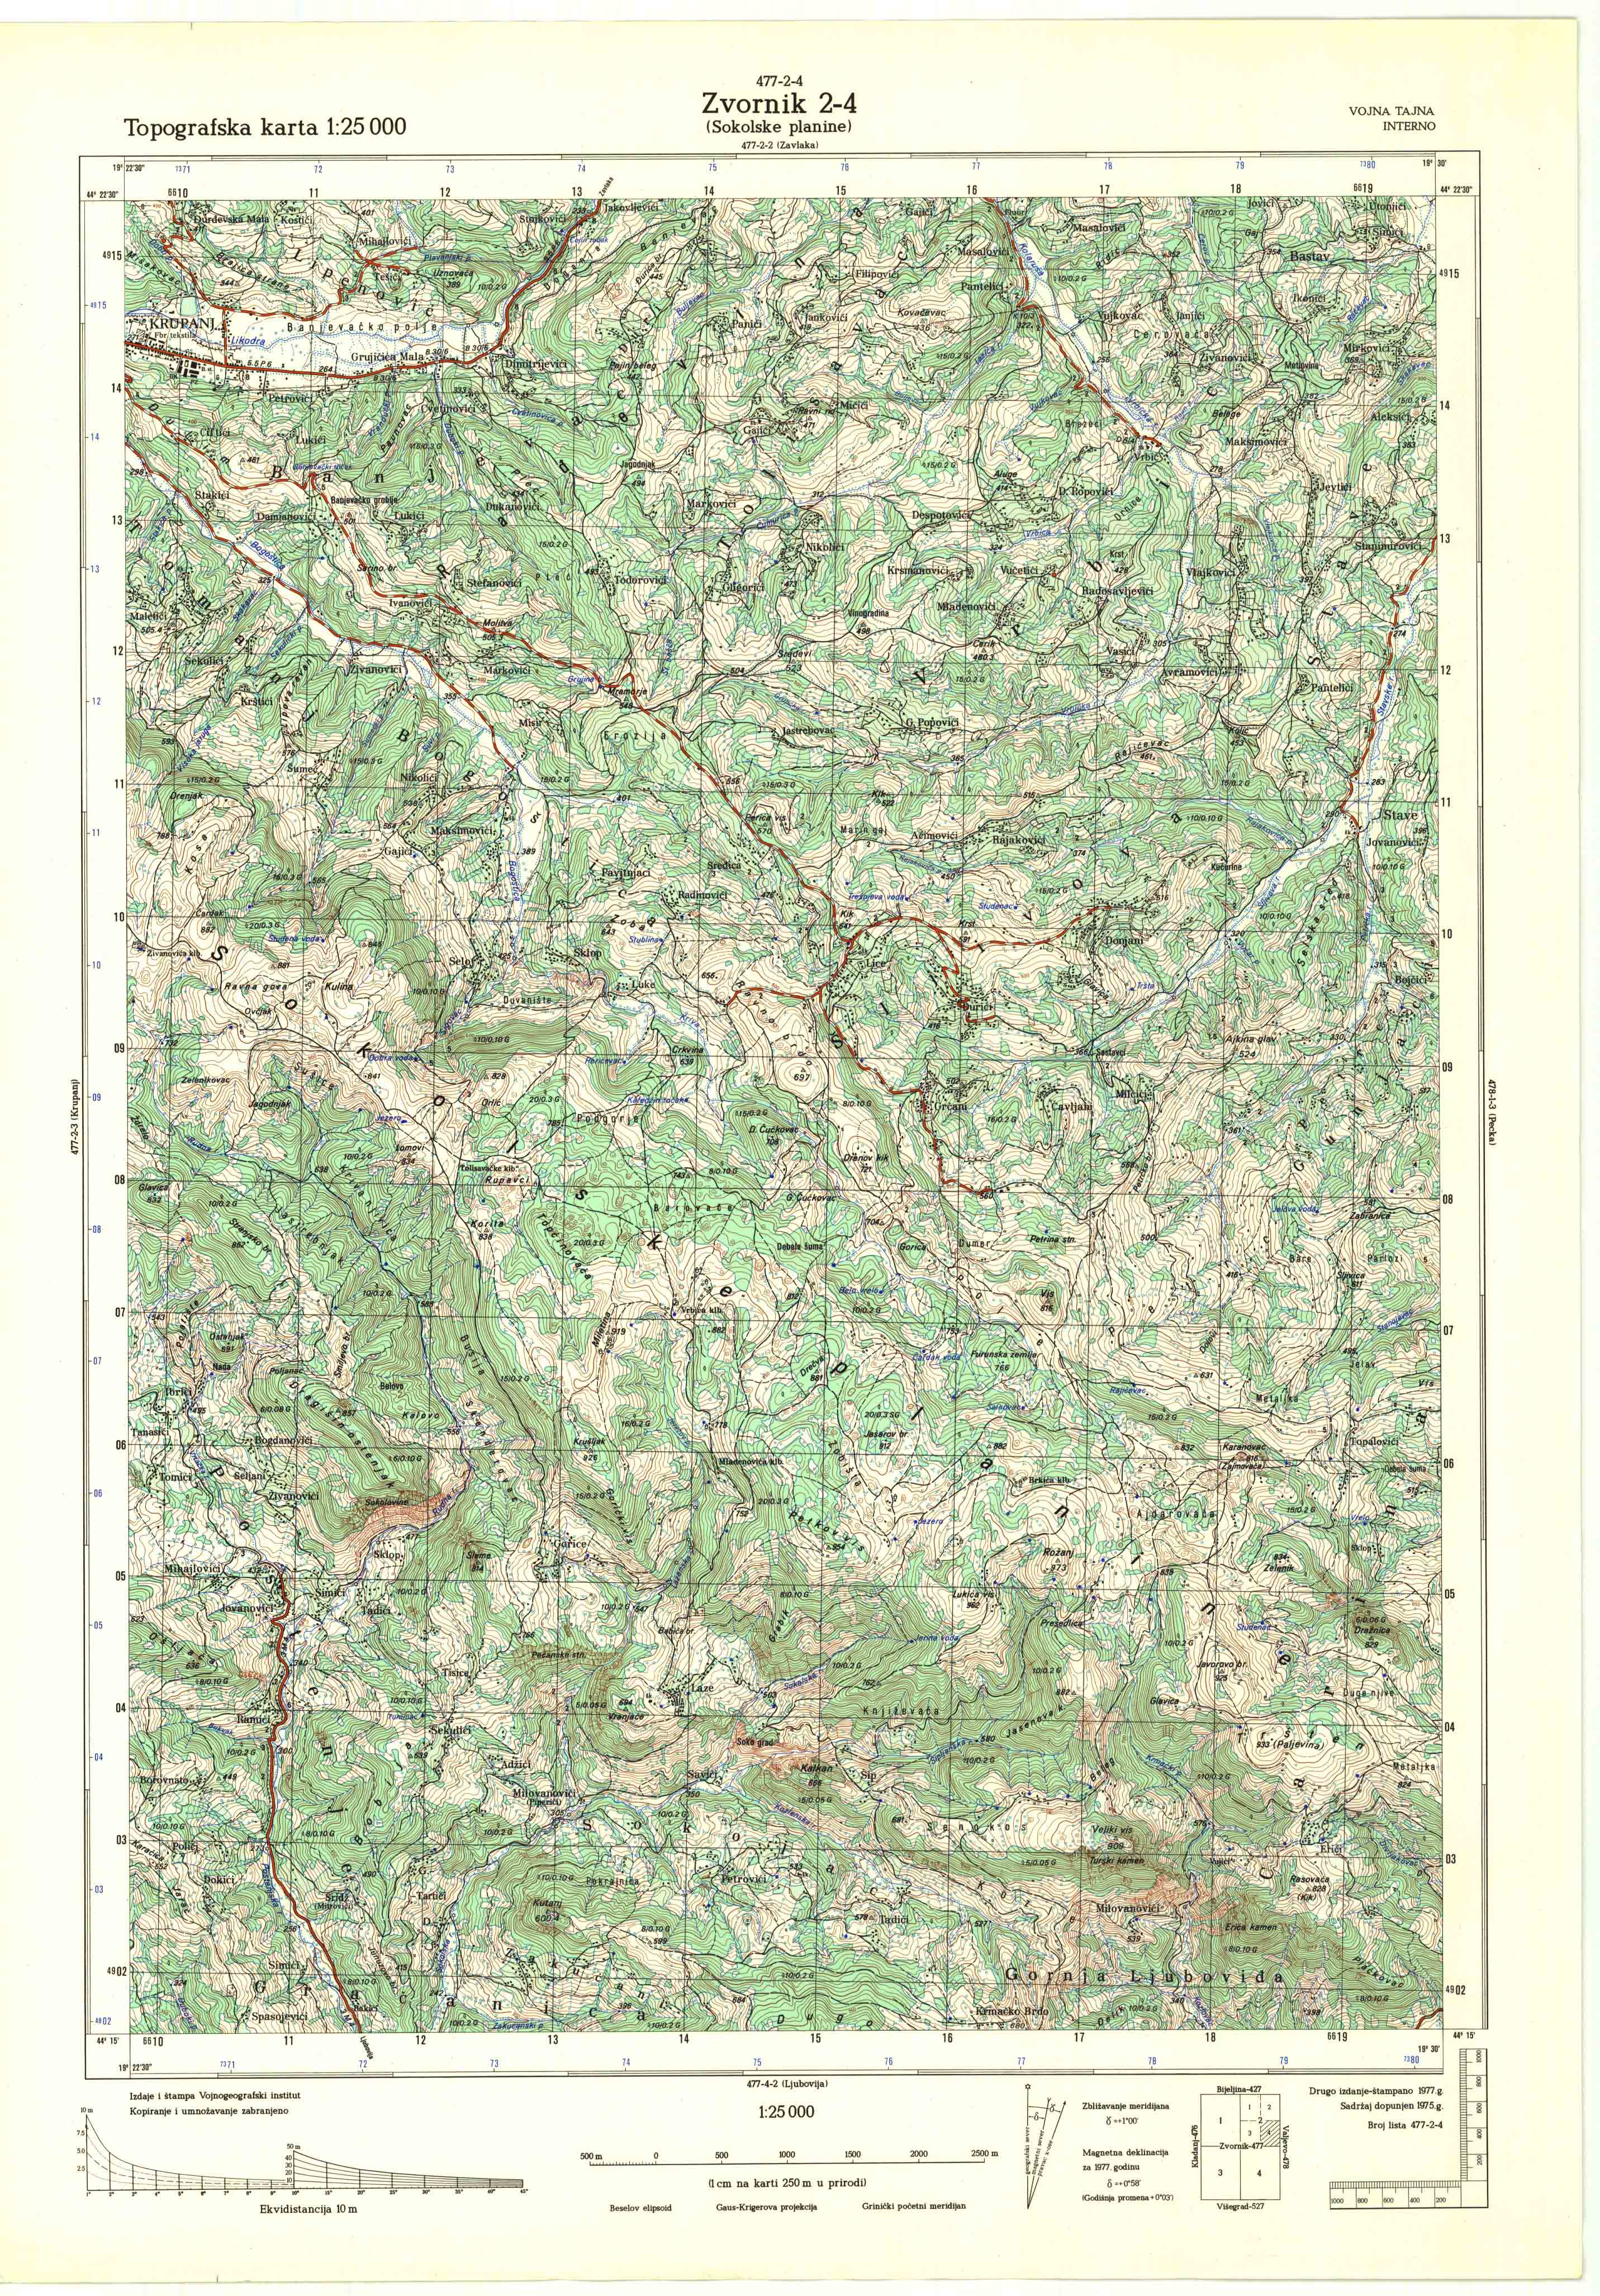  topografska karta srbije 25000 JNA  Zvornik